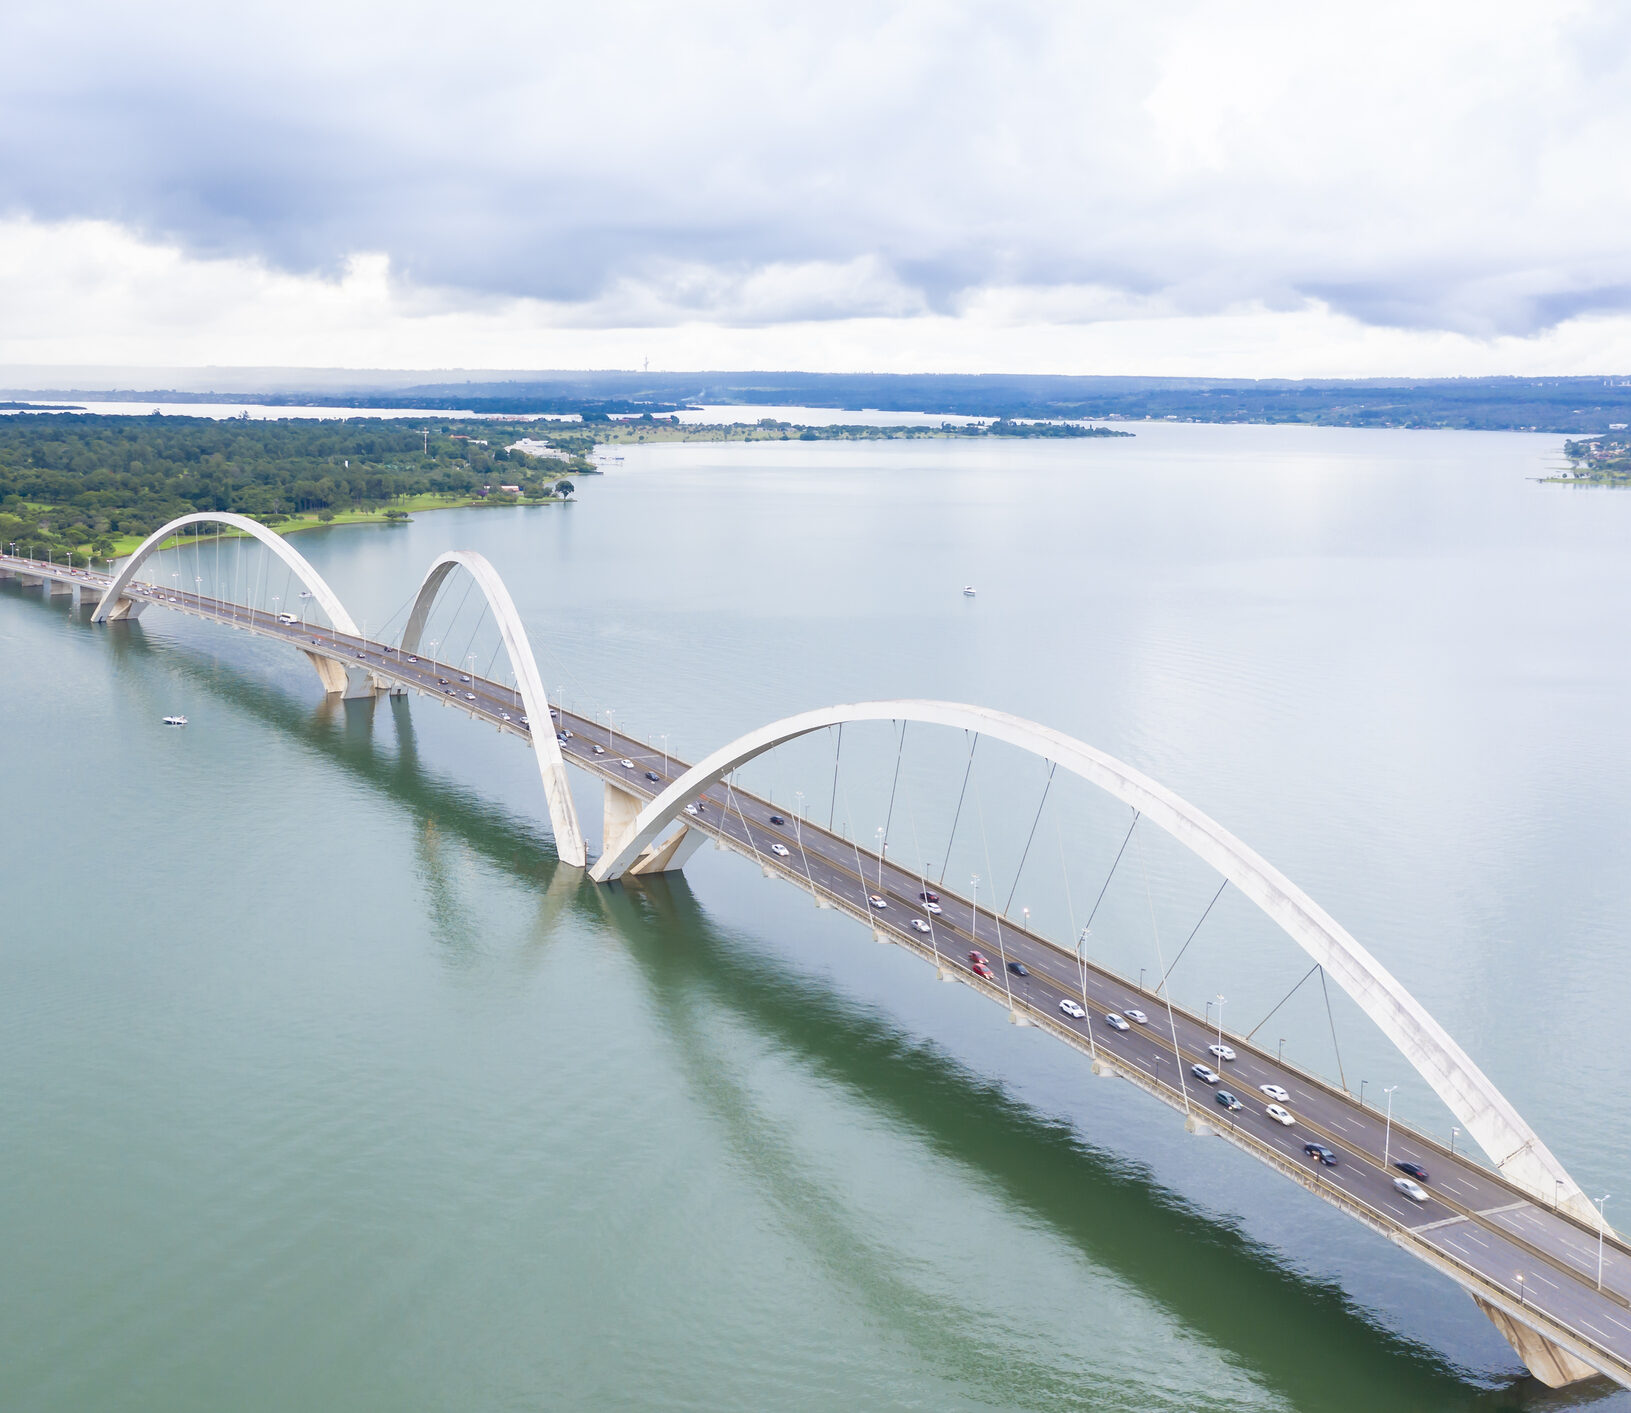 A ponte JK é um ícone da arquitetura mordenista de Brasília